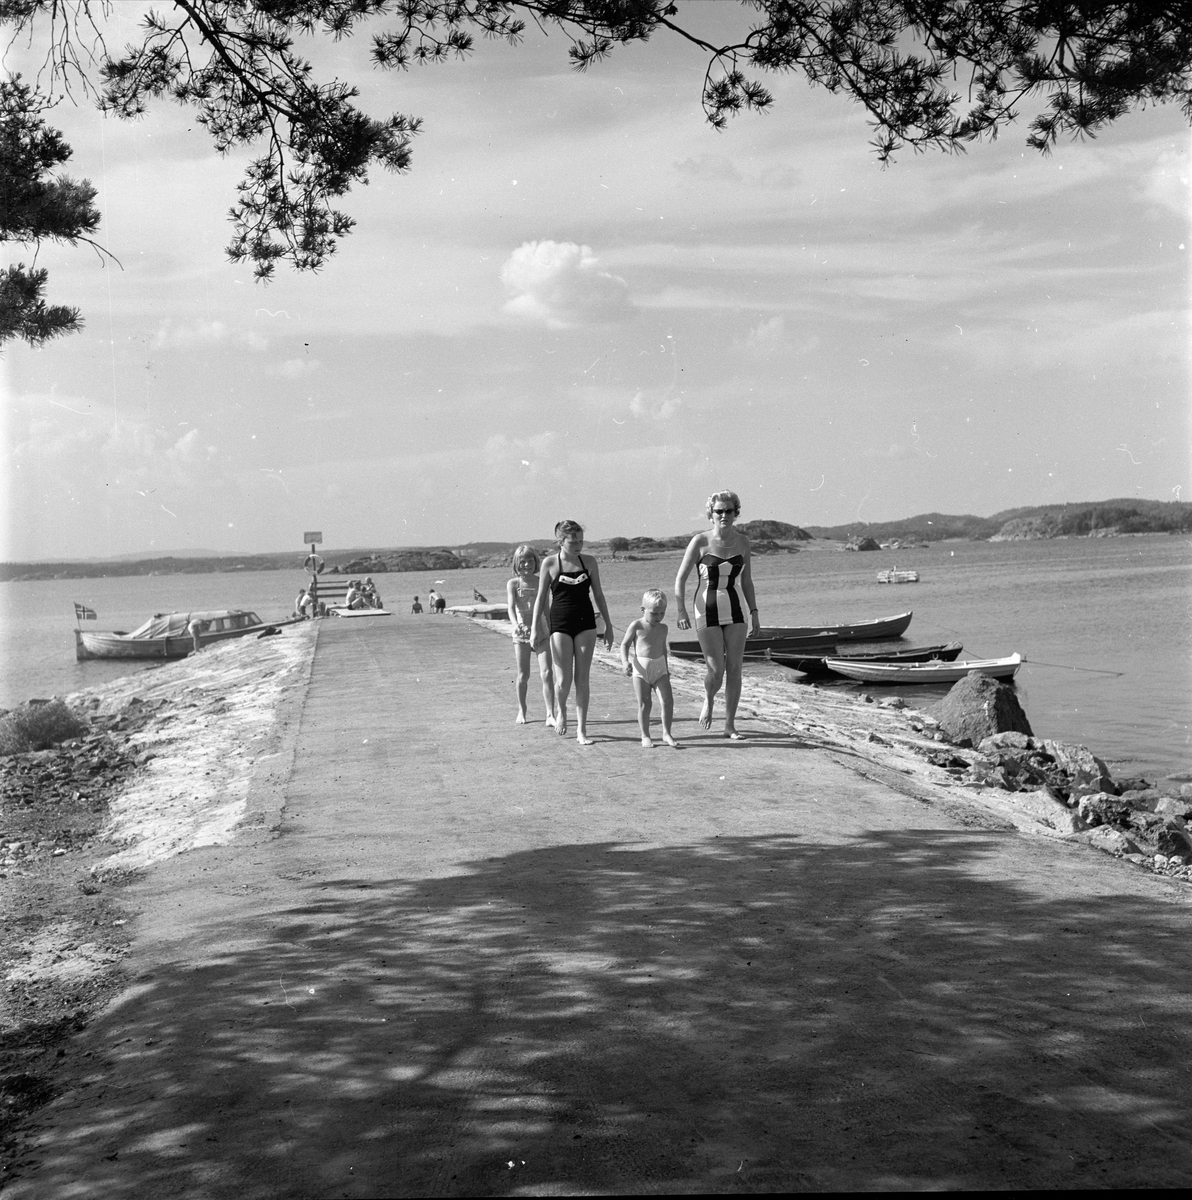 Vøra, Sandefjord, Vestfold, 07.07.1958. Vøra badestrand. Brygge med båter og mennesker i badetøy.